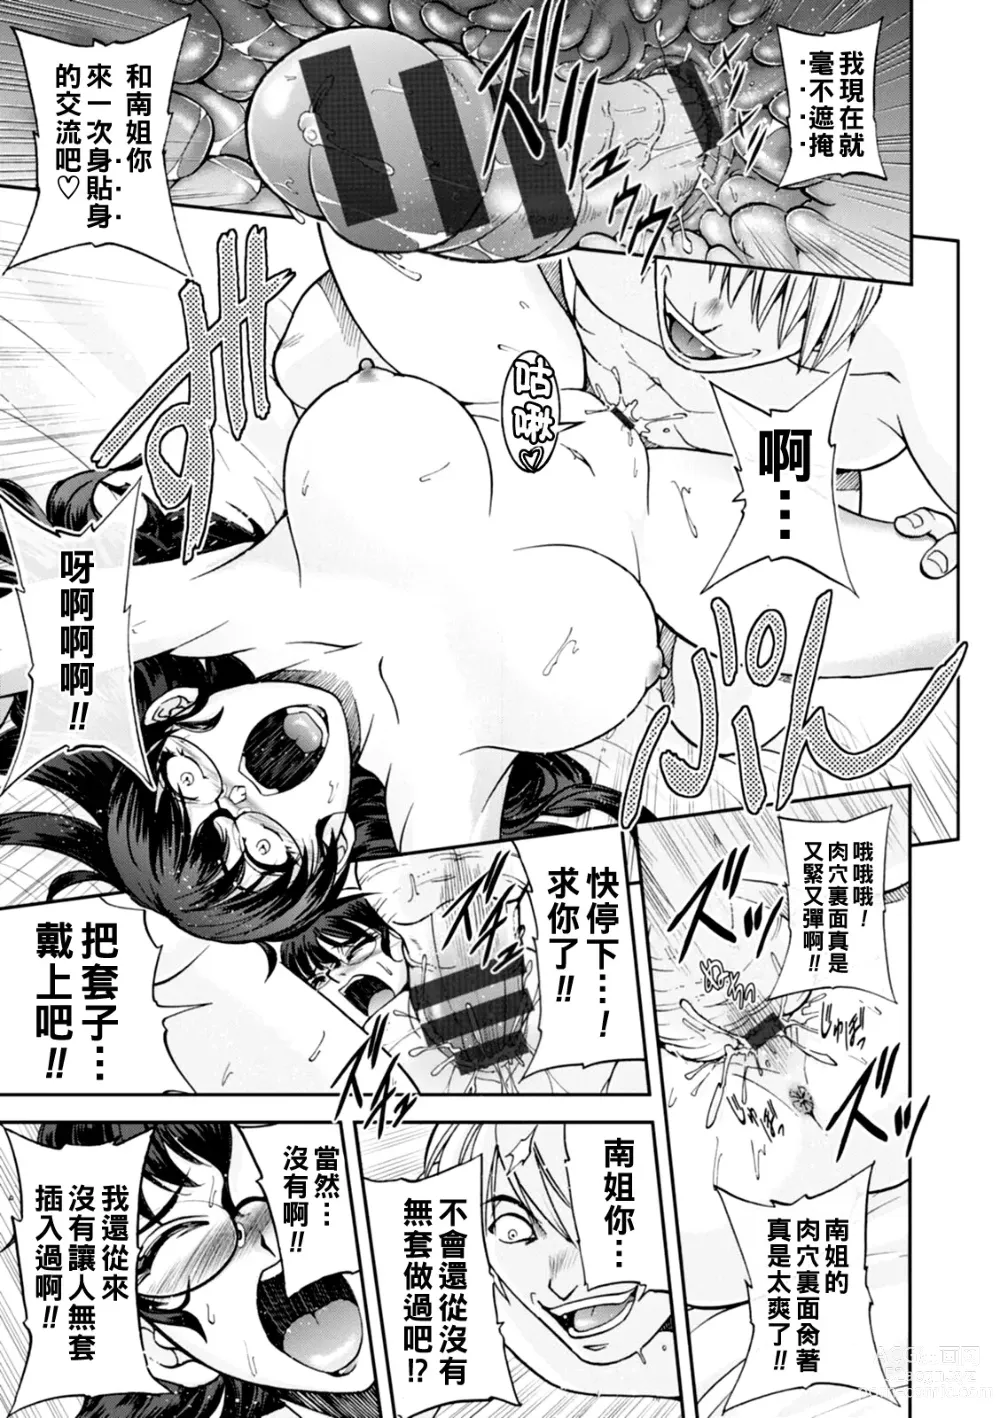 Page 16 of manga Maruhadaka no Minami-san Ch. 1-4